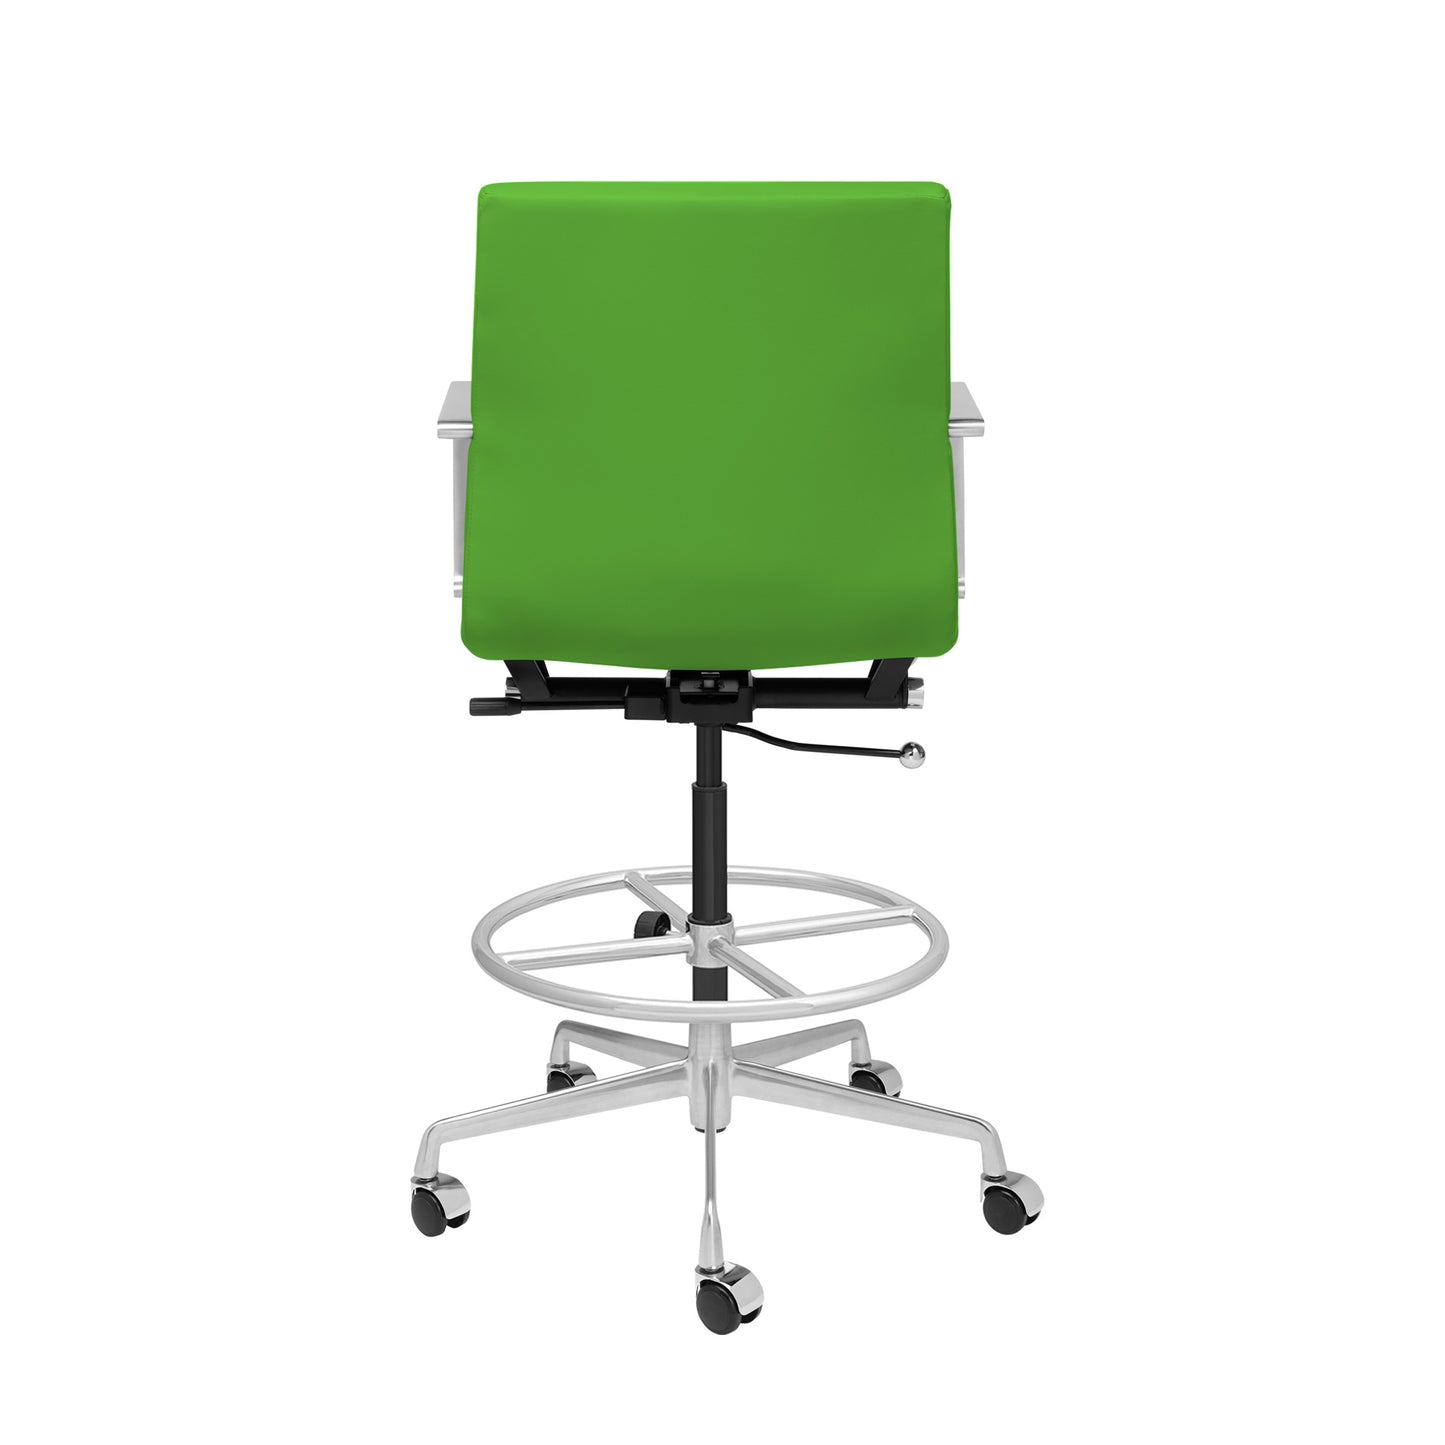 SHIPS MAY 17TH - SOHO II Ribbed Drafting Chair (Green)